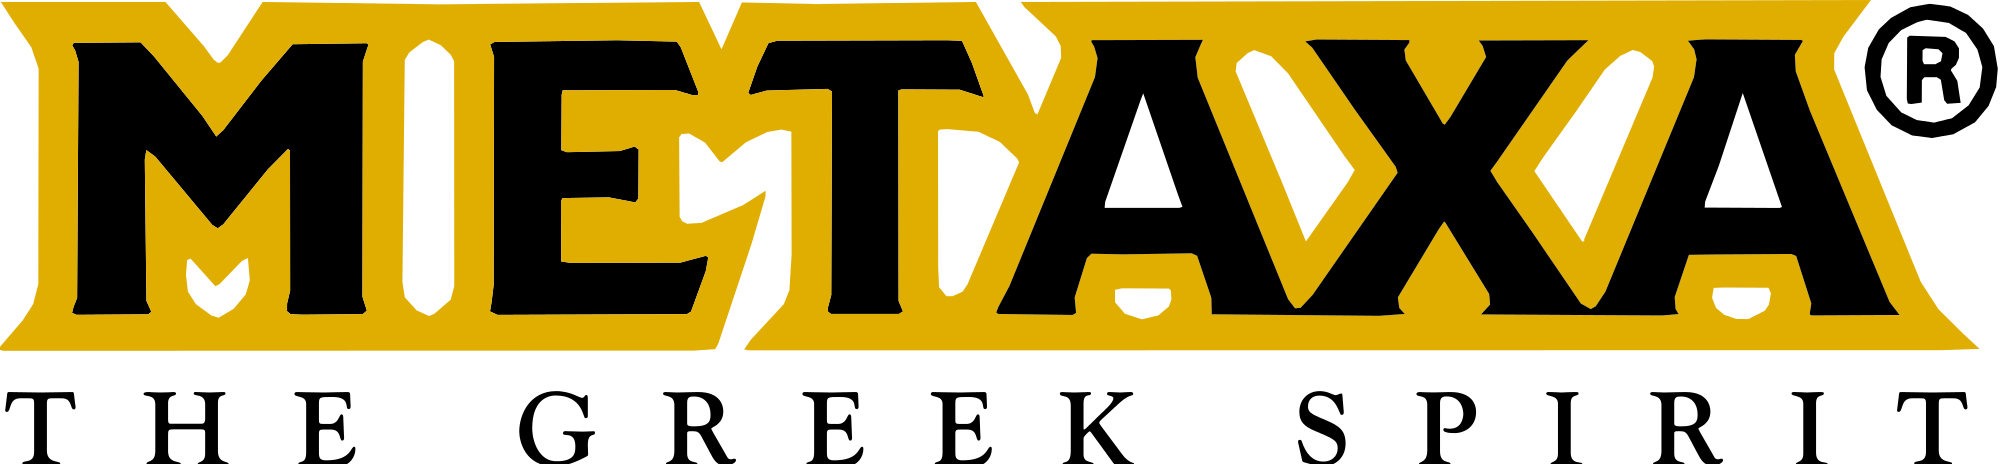 Metaxa_Logo.svg.png